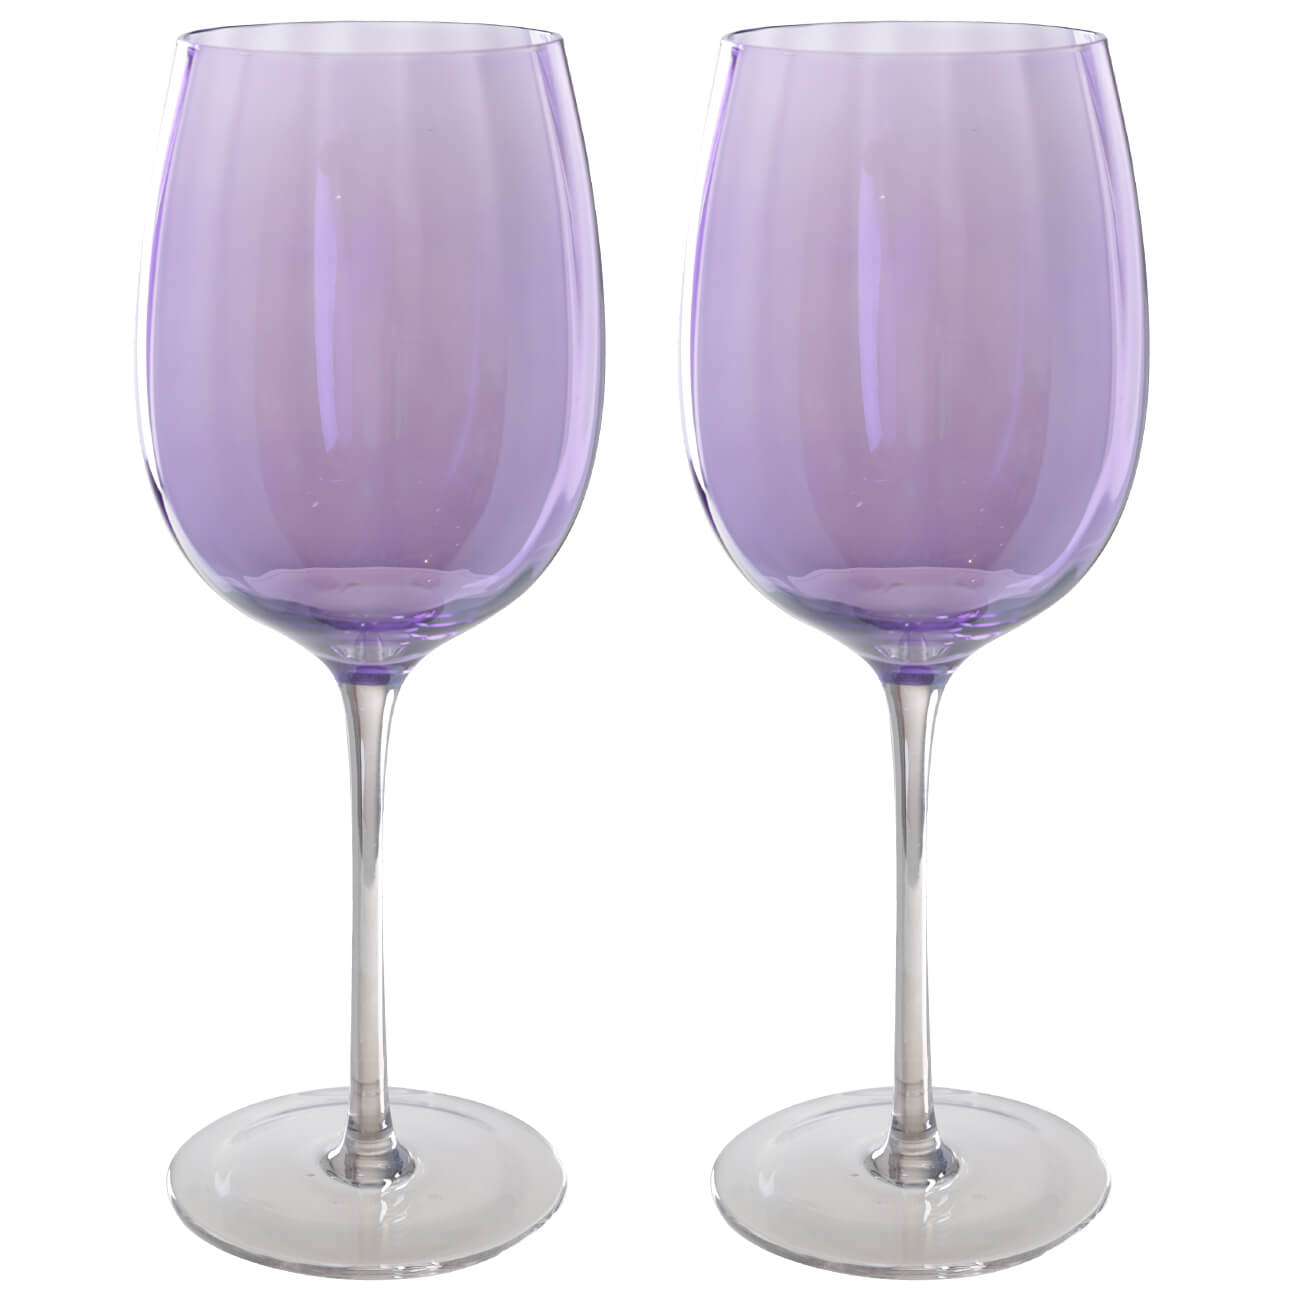 Бокал для вина, 470 мл, 2 шт, стекло, фиолетовый, Filo R color очки для езды на мототехнике стекло фиолетовый хамелеон черные